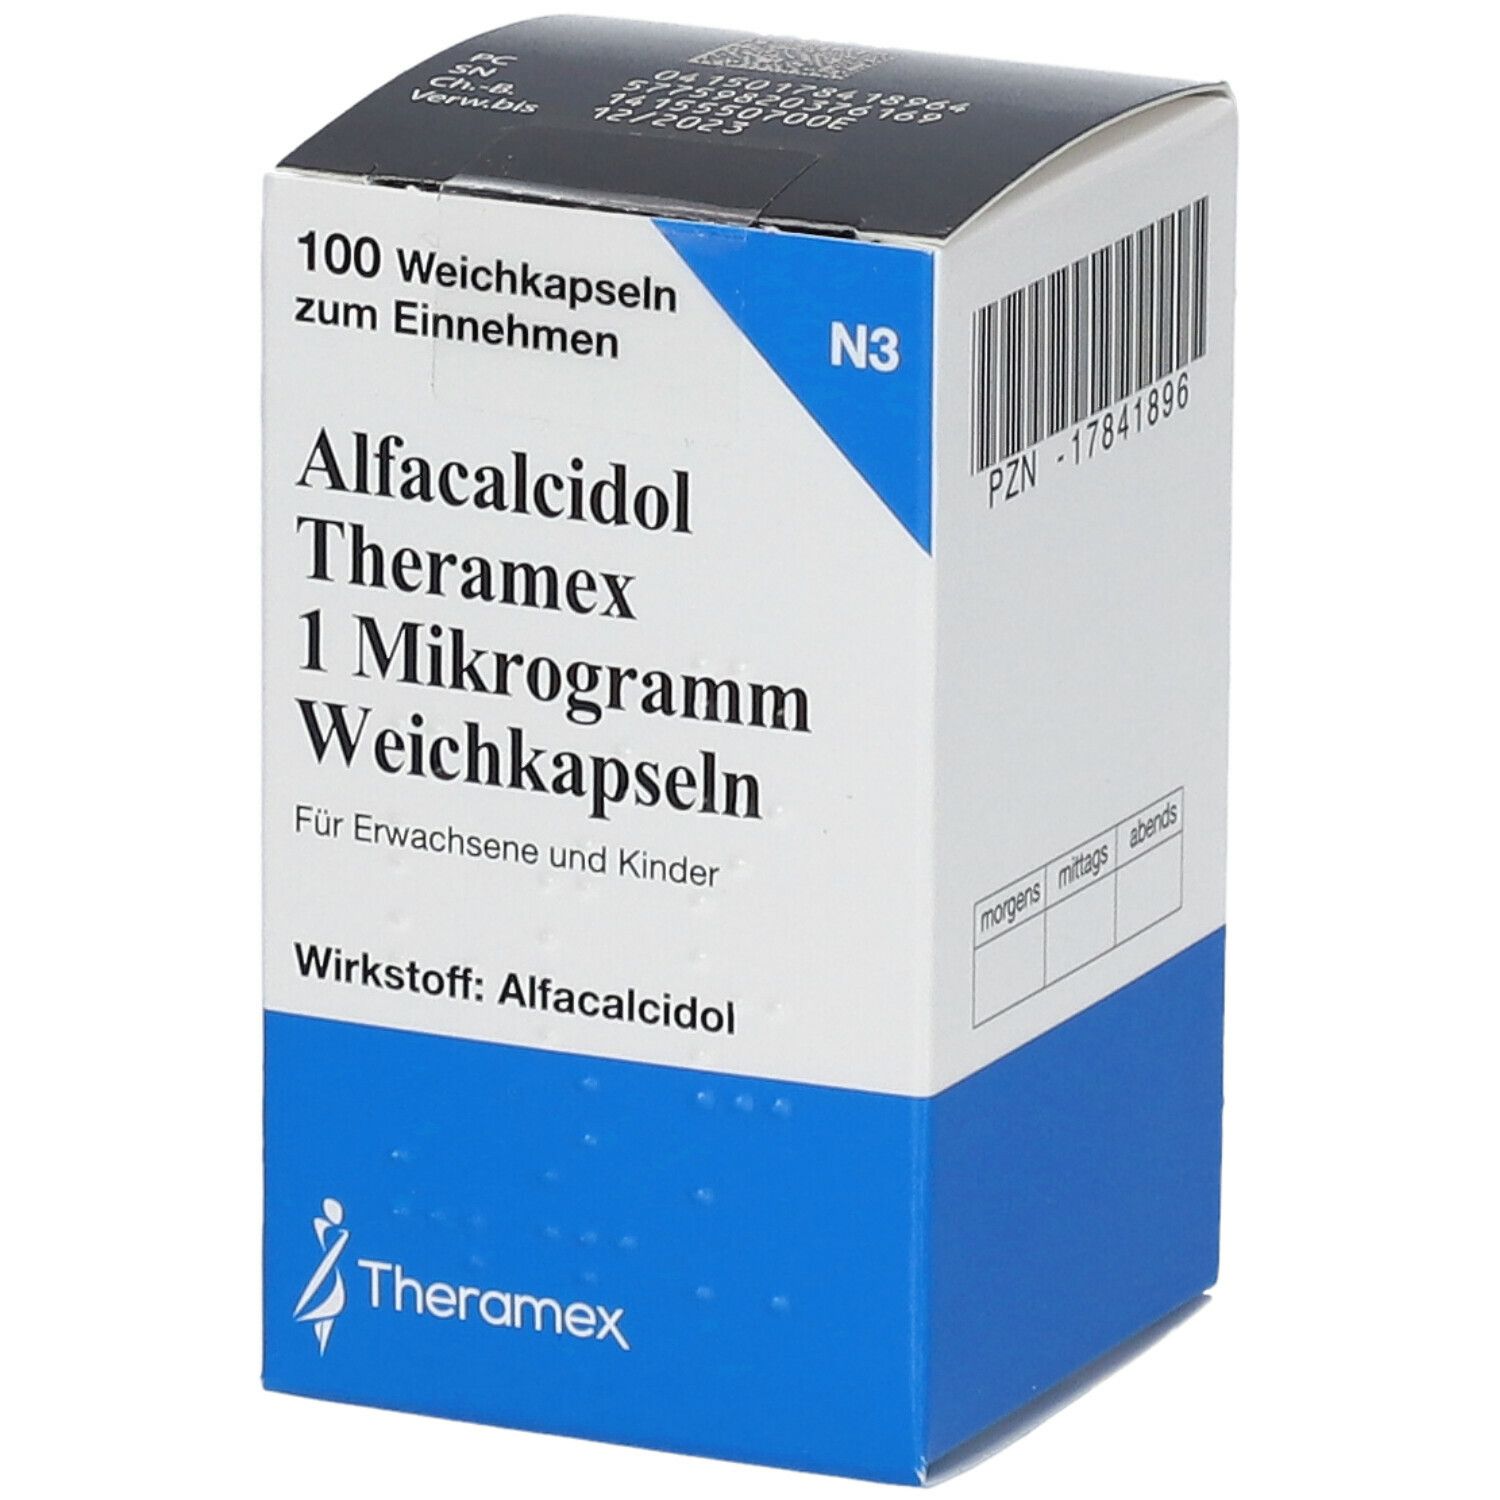 Alfacalcidol Theramex 1 Mikrogramm Weichkapseln